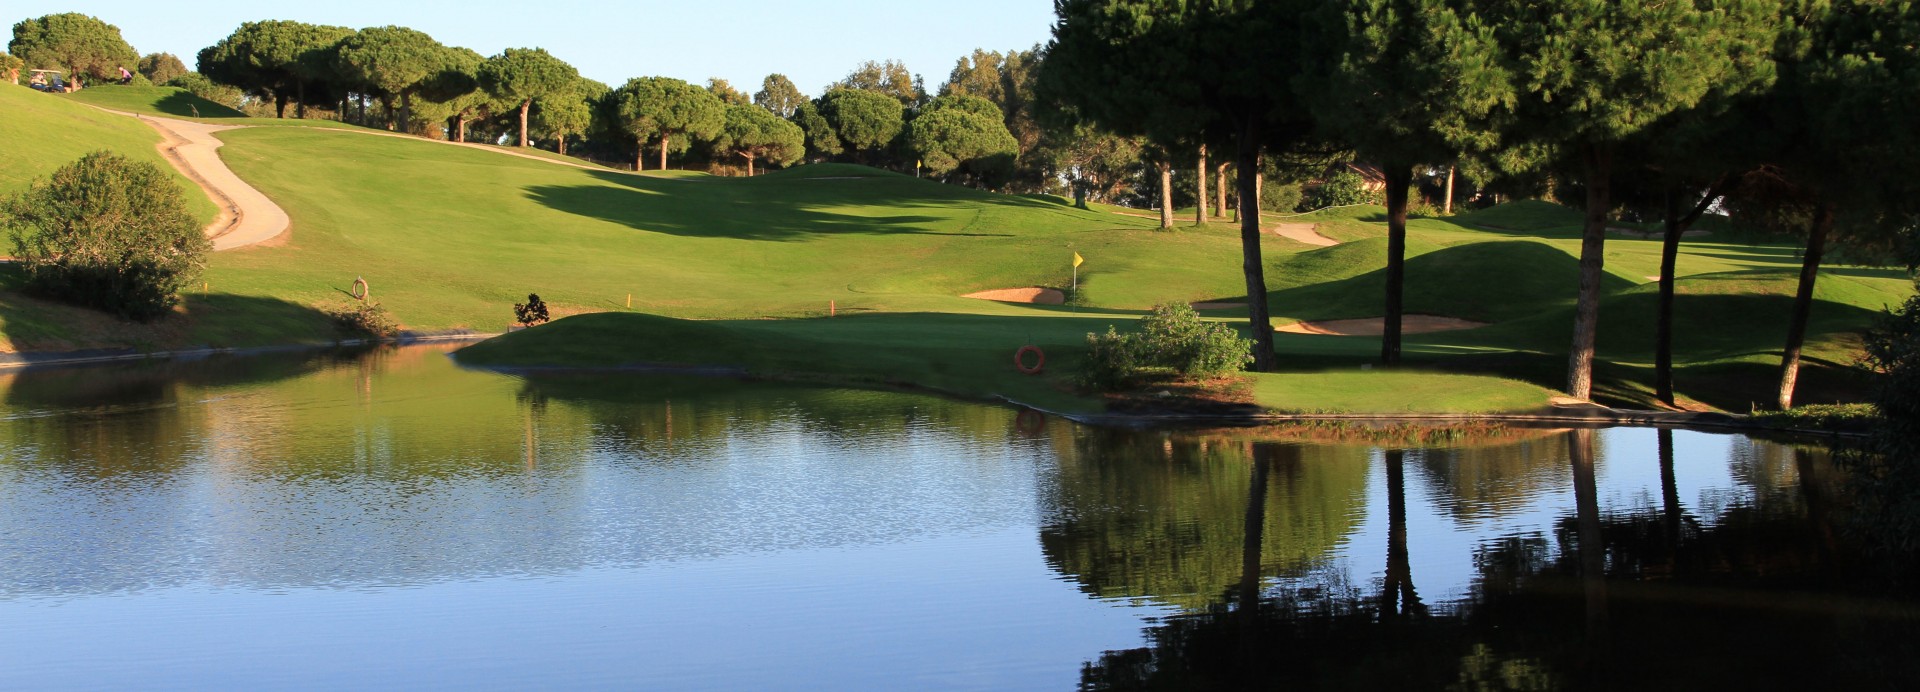 Cabopino Golf Marbella  | Golfové zájezdy, golfová dovolená, luxusní golf